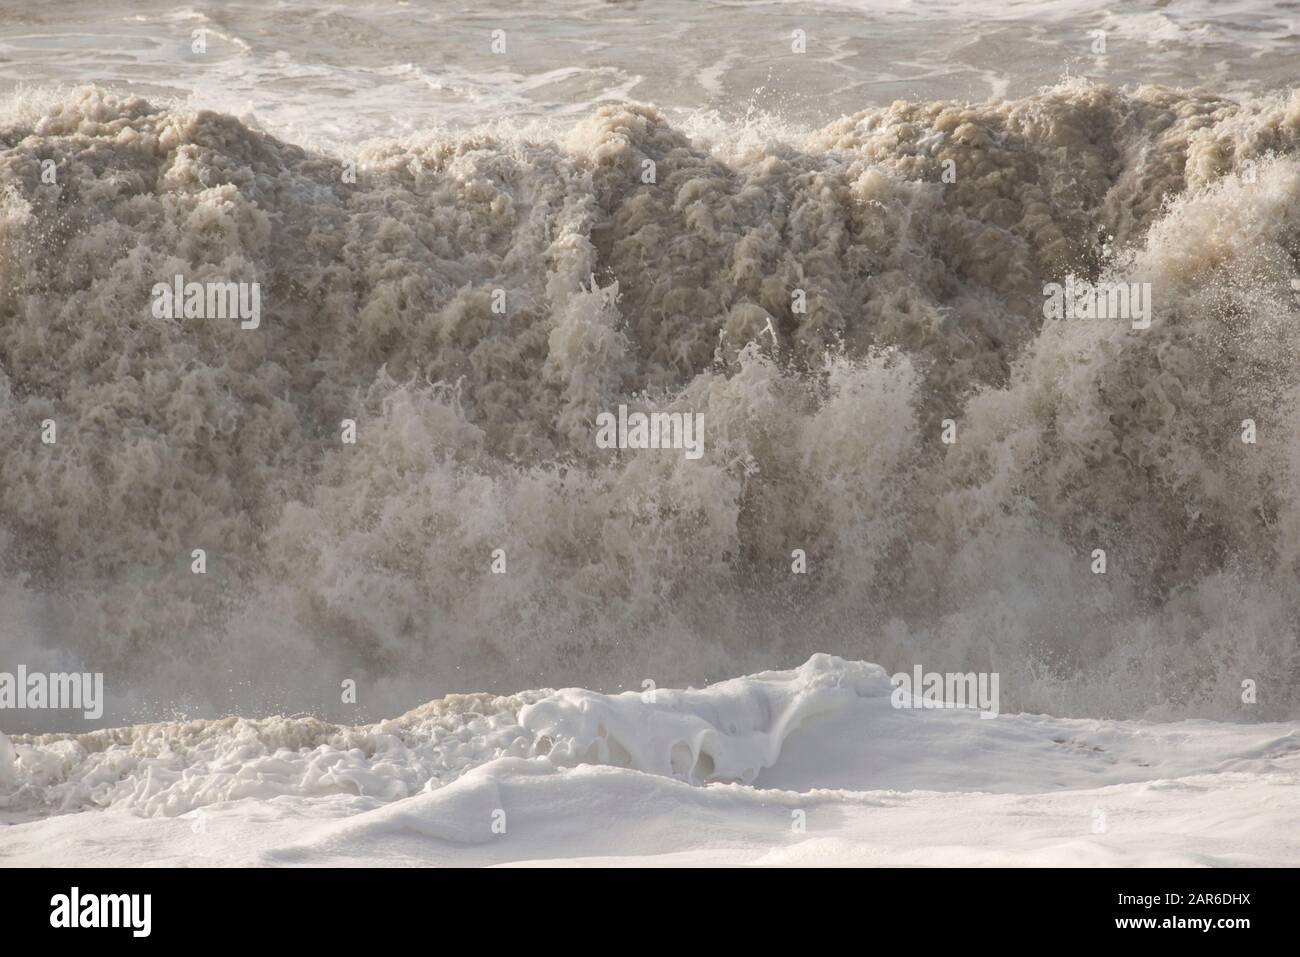 Onde alte, infrangono da una tempesta della Manica con sabbia da spiaggia montata che erode la costa su Hive Beach, Dorset, gennaio Foto Stock